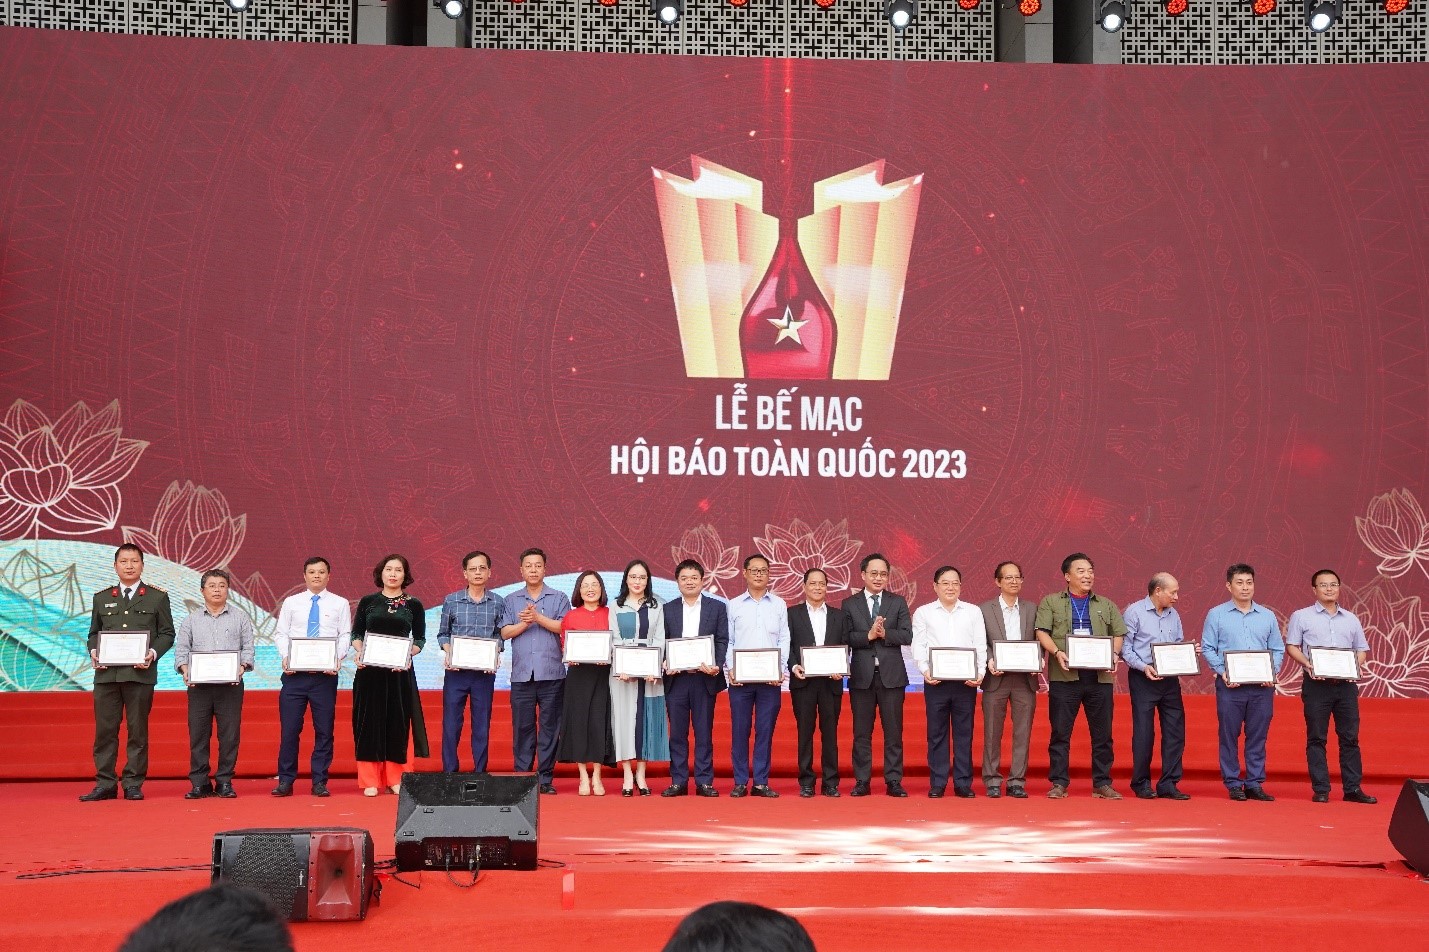 Nhà báo Nguyễn Văn Minh - Phó Tổng Biên tập phụ trách Báo Công Thương (thứ 9 từ trái sang) nhận Giải C - Bìa báo Tết ấn tượng tại Hội báo Toàn quốc 2023